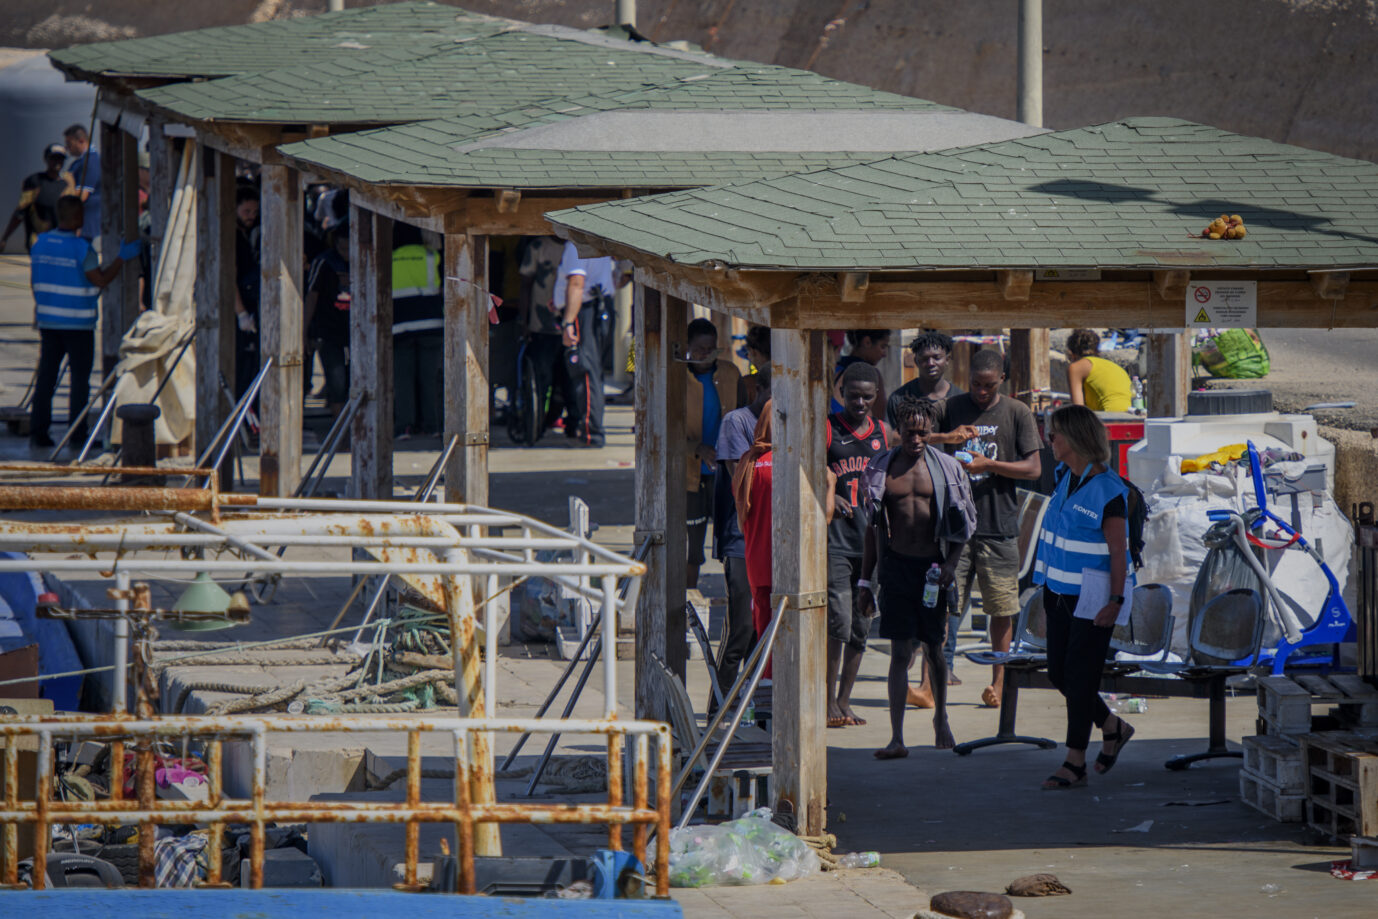 Auf dem Foto befindet sich ein Asyllager in Lampedusa, in dem viele Migranten auf Weiterreise warten. (Themenbild/Symbolbild)